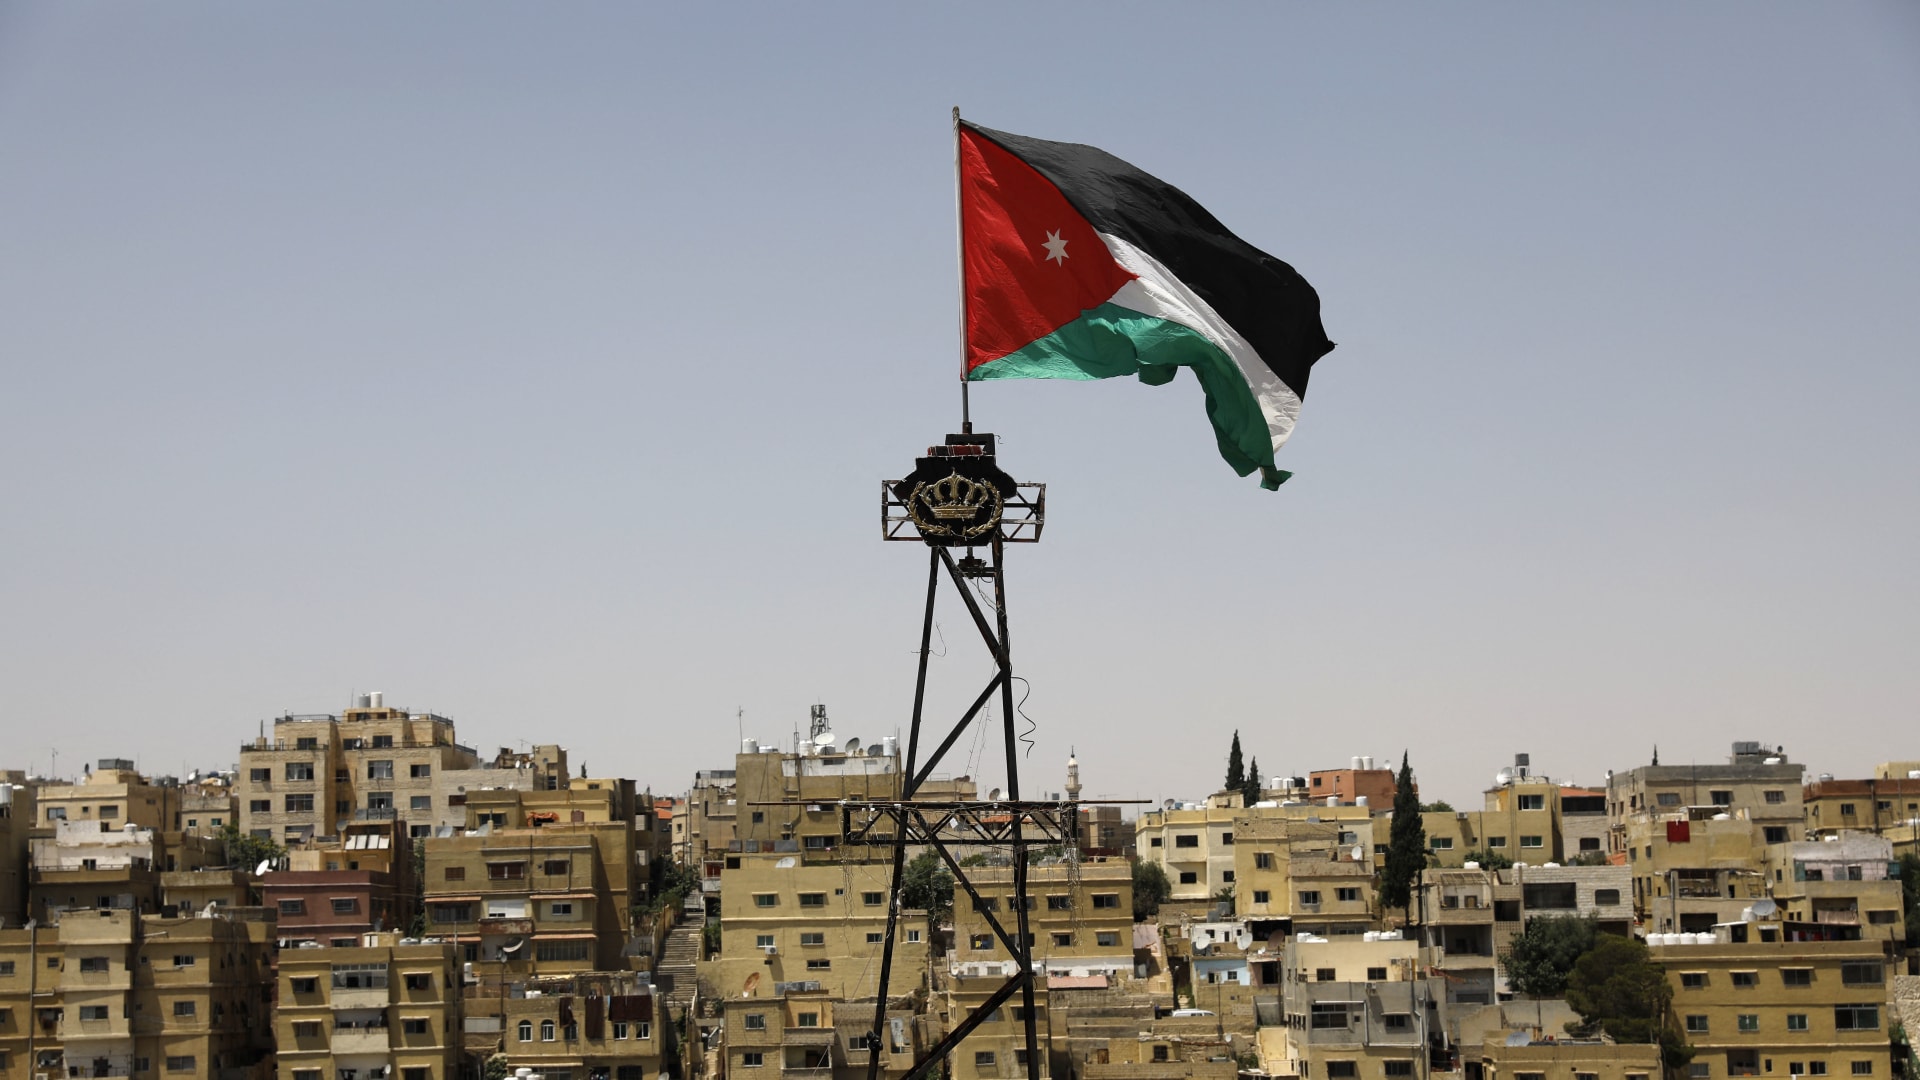 الأردن: الحكومة الإسرائيلية تتصرف مرة أخرى بازدراء للقانون الدولي